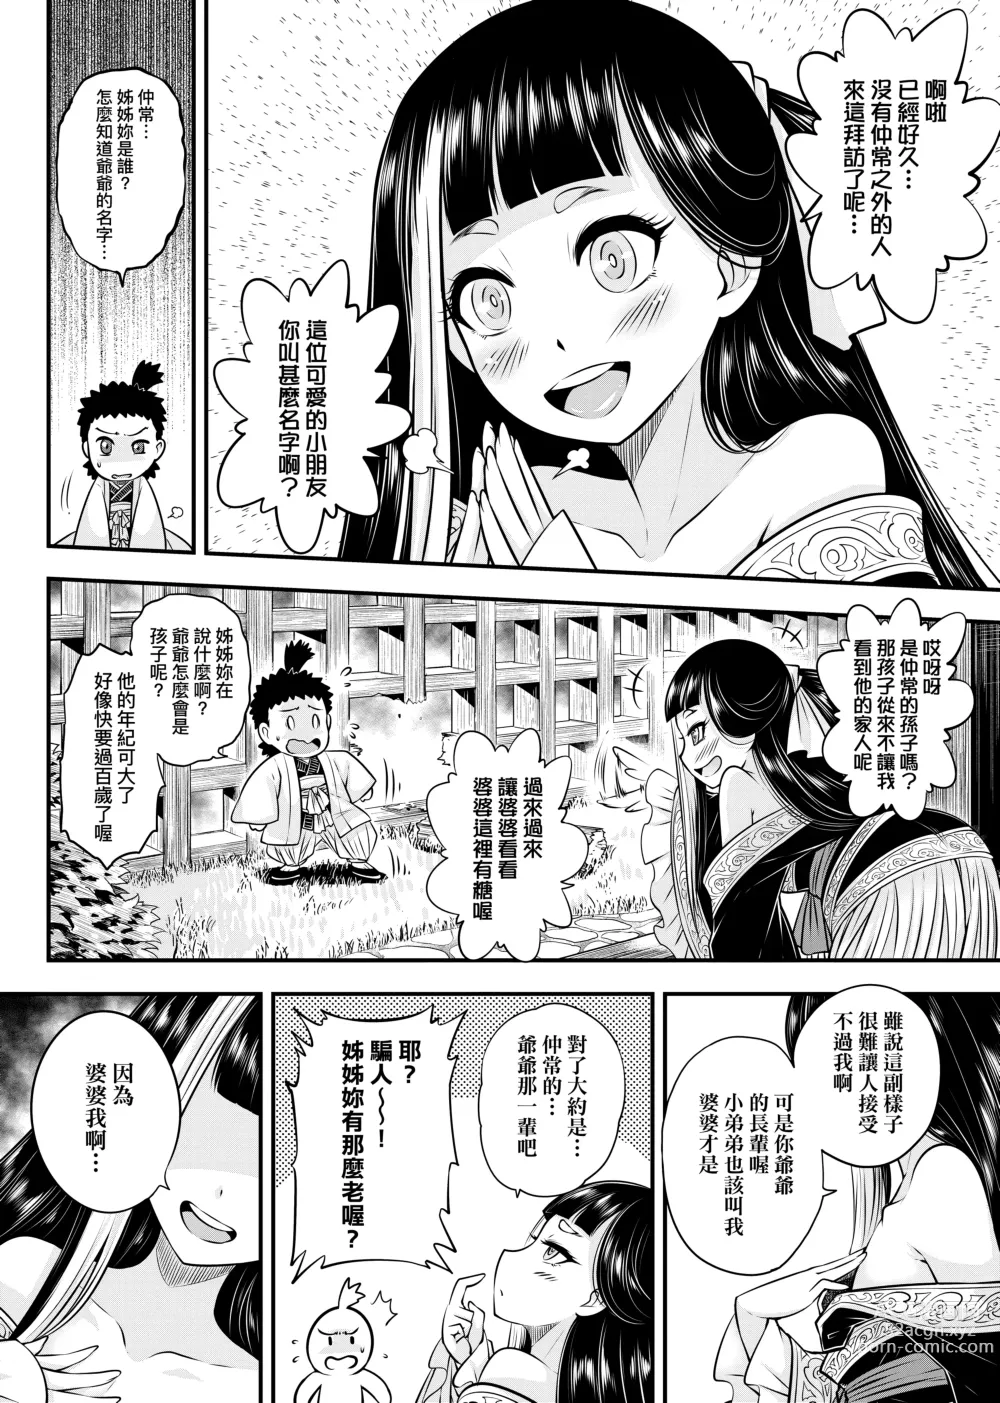 Page 9 of manga 永世流轉 (decensored)